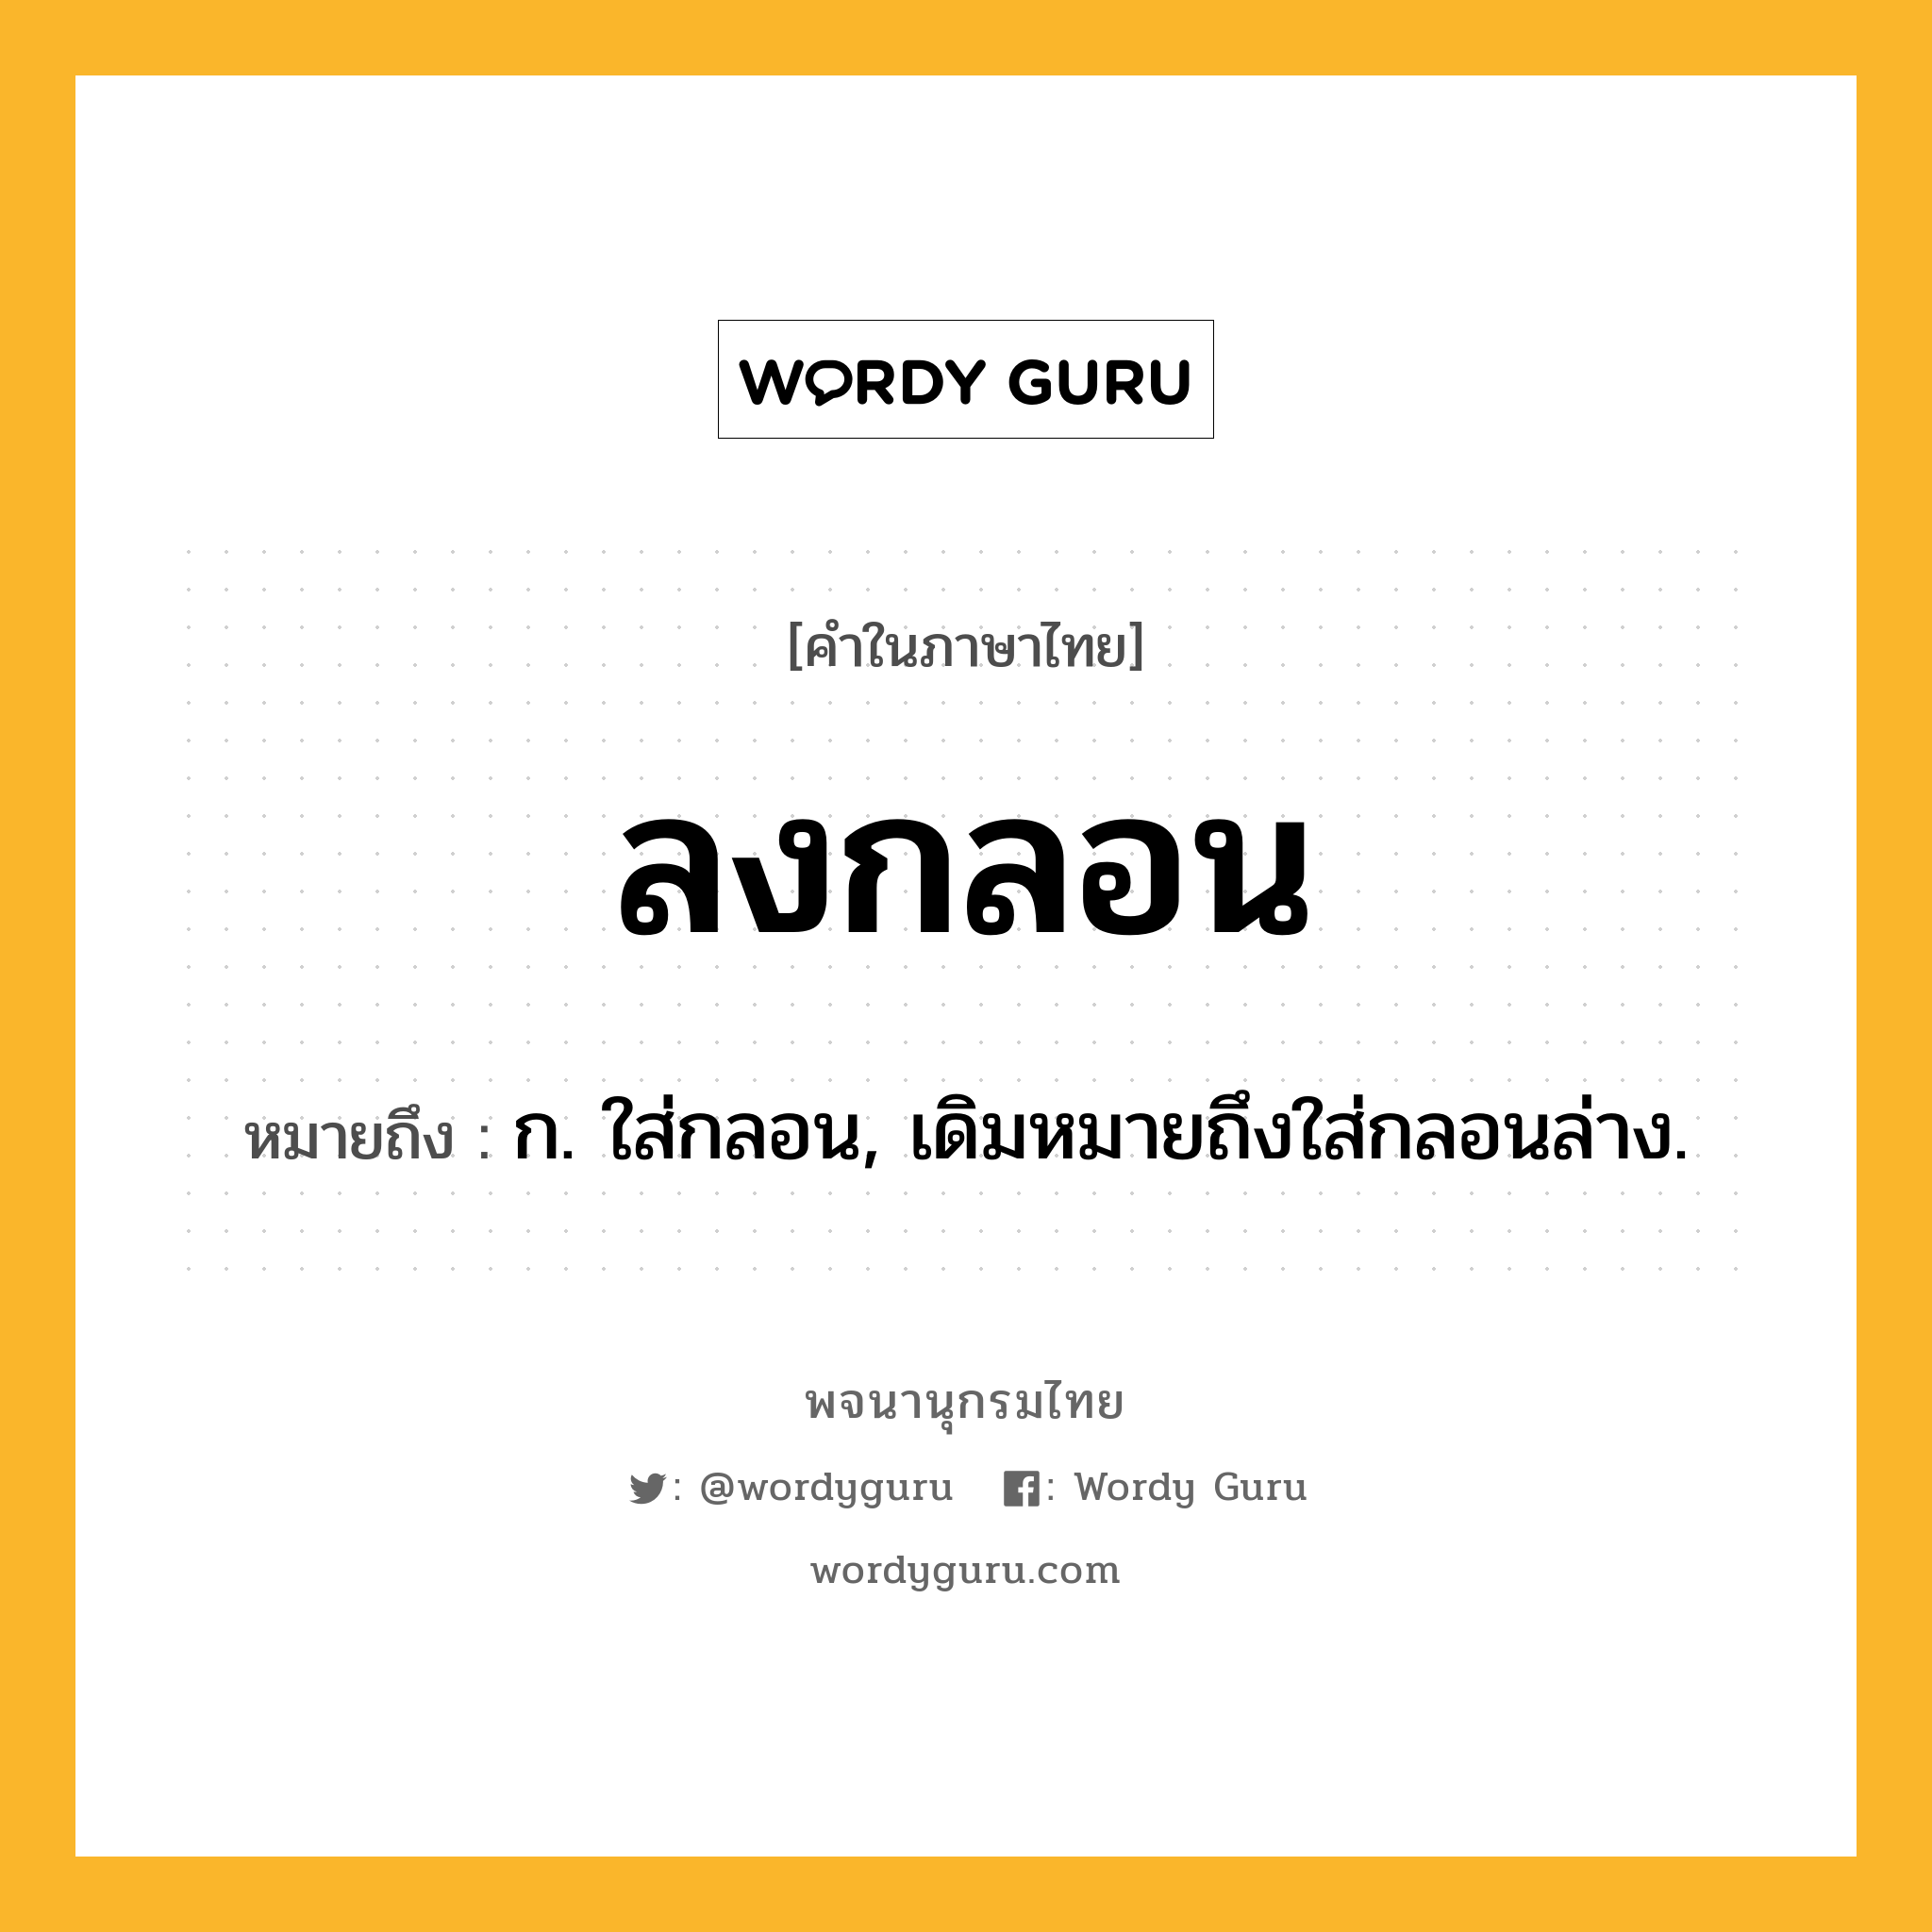 ลงกลอน ความหมาย หมายถึงอะไร?, คำในภาษาไทย ลงกลอน หมายถึง ก. ใส่กลอน, เดิมหมายถึงใส่กลอนล่าง.